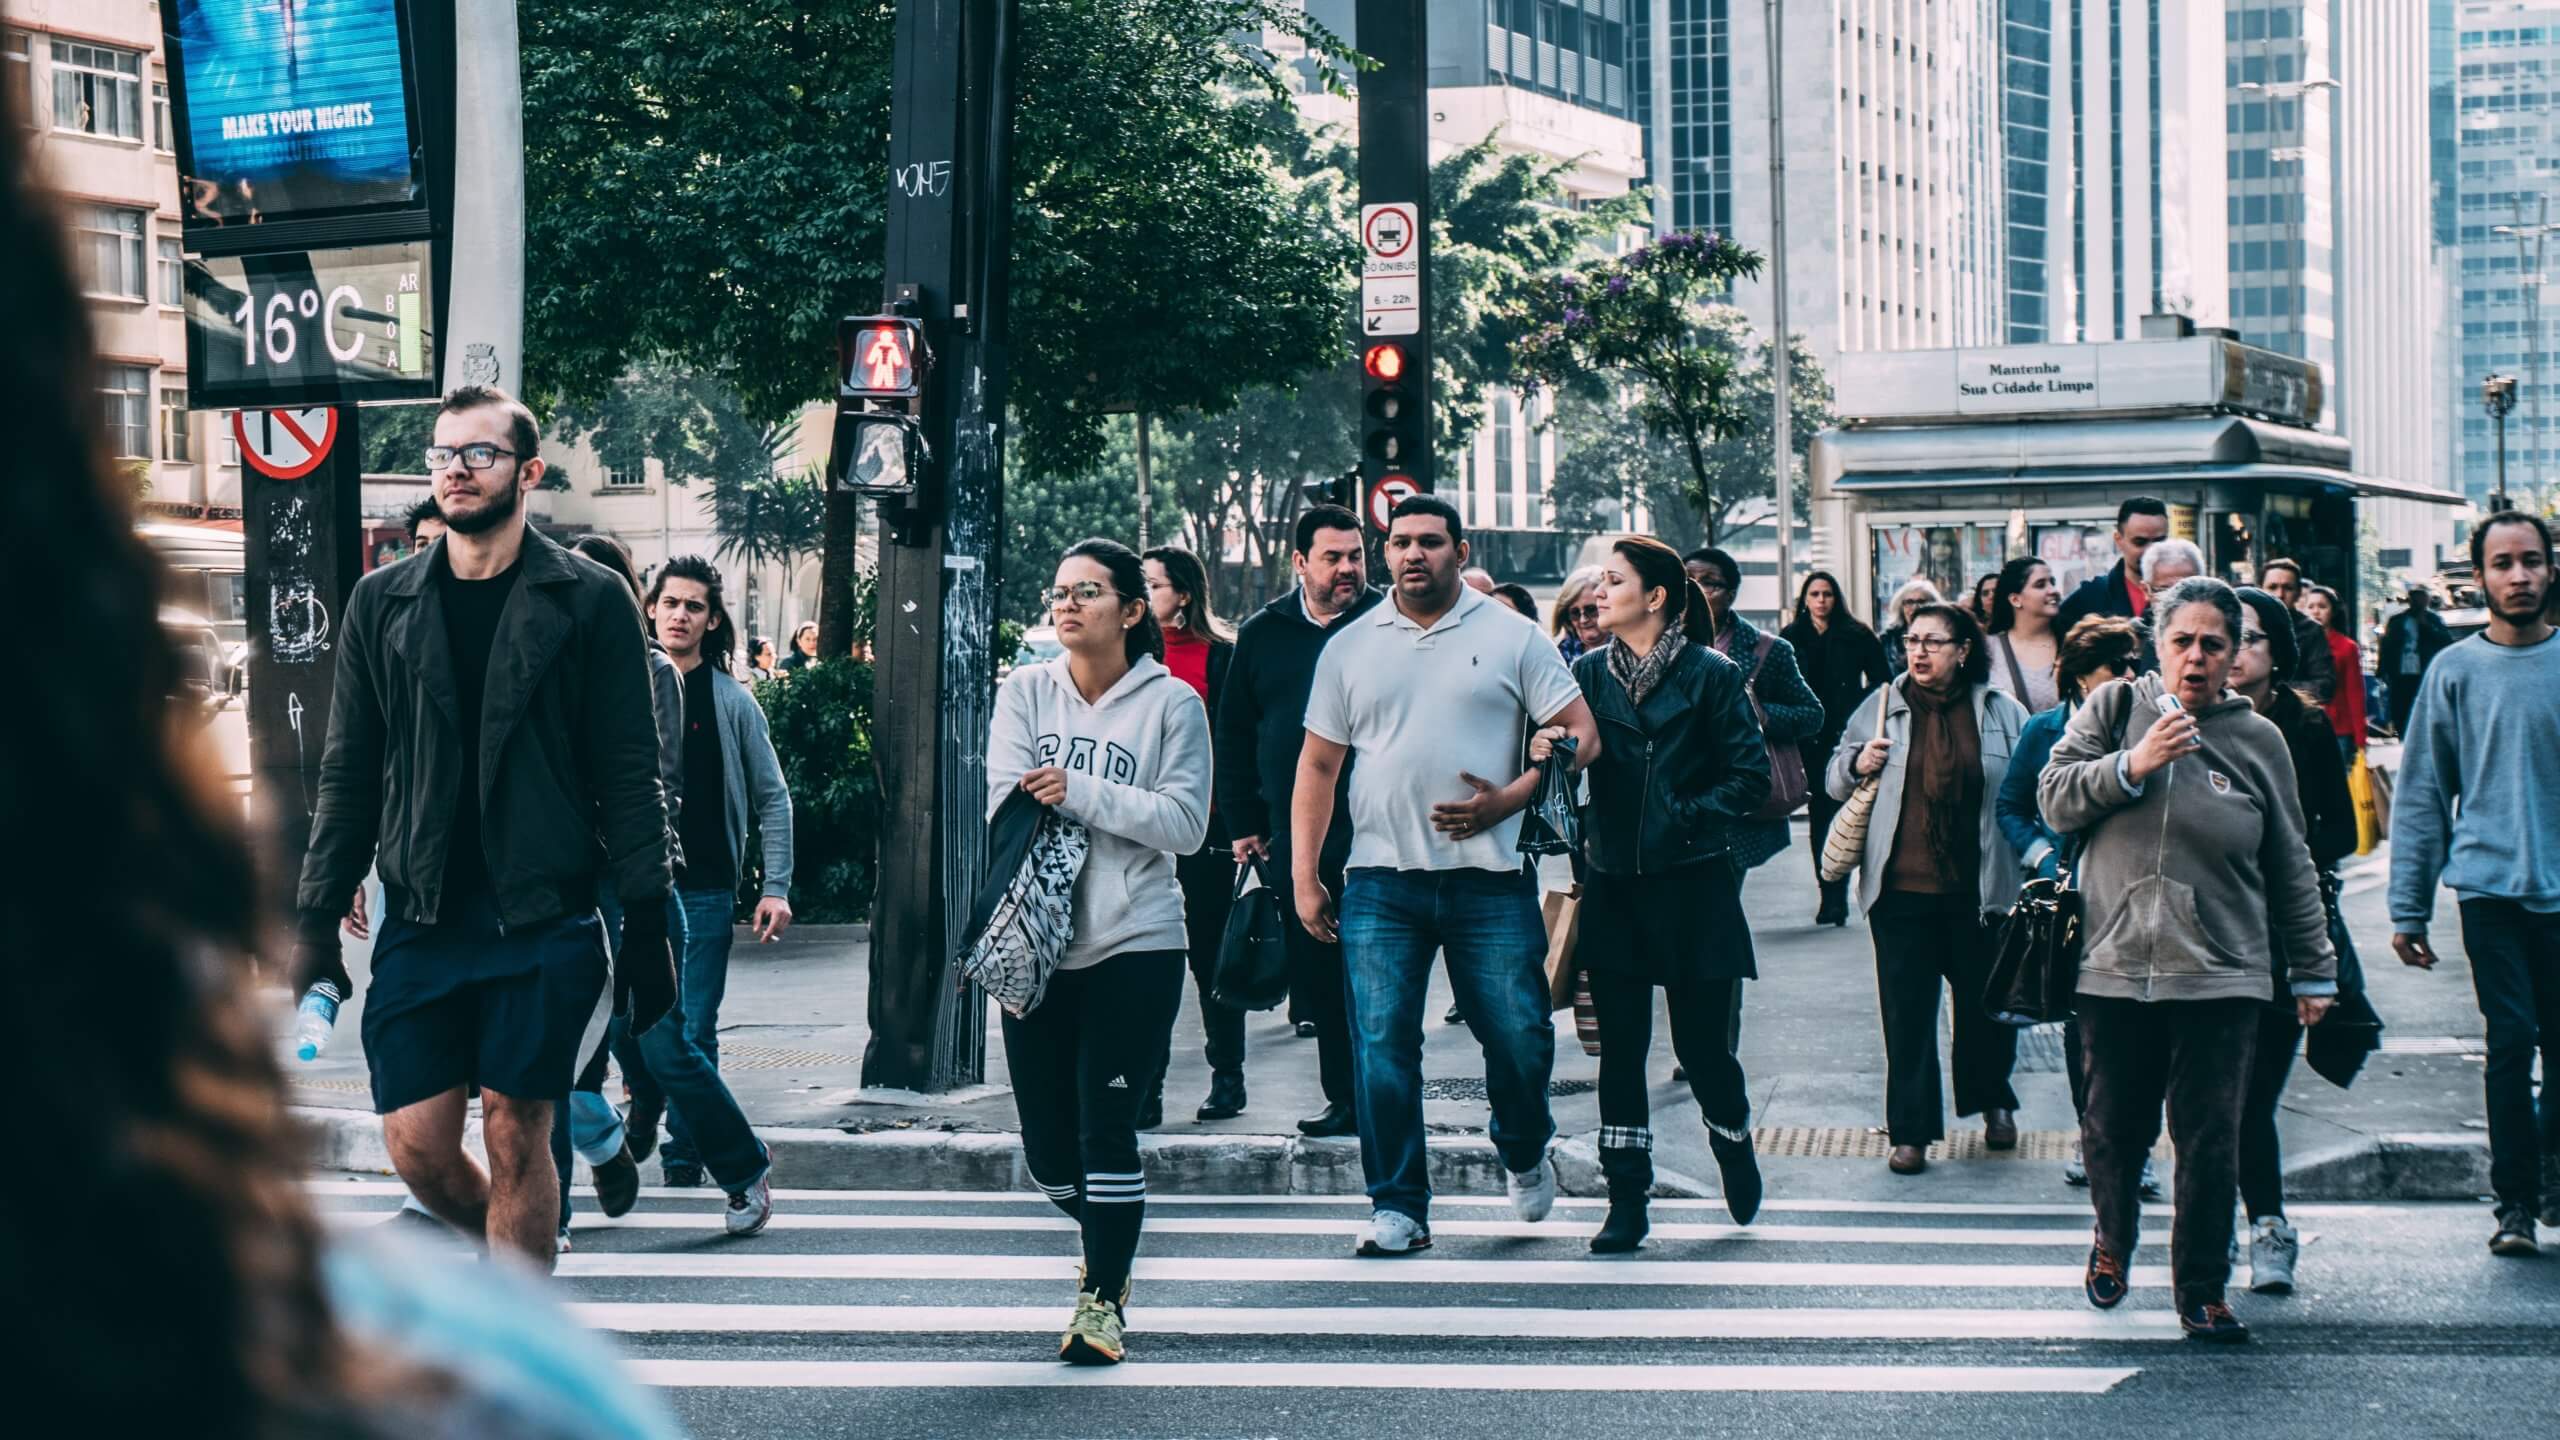 Pedestrians using a crosswalk